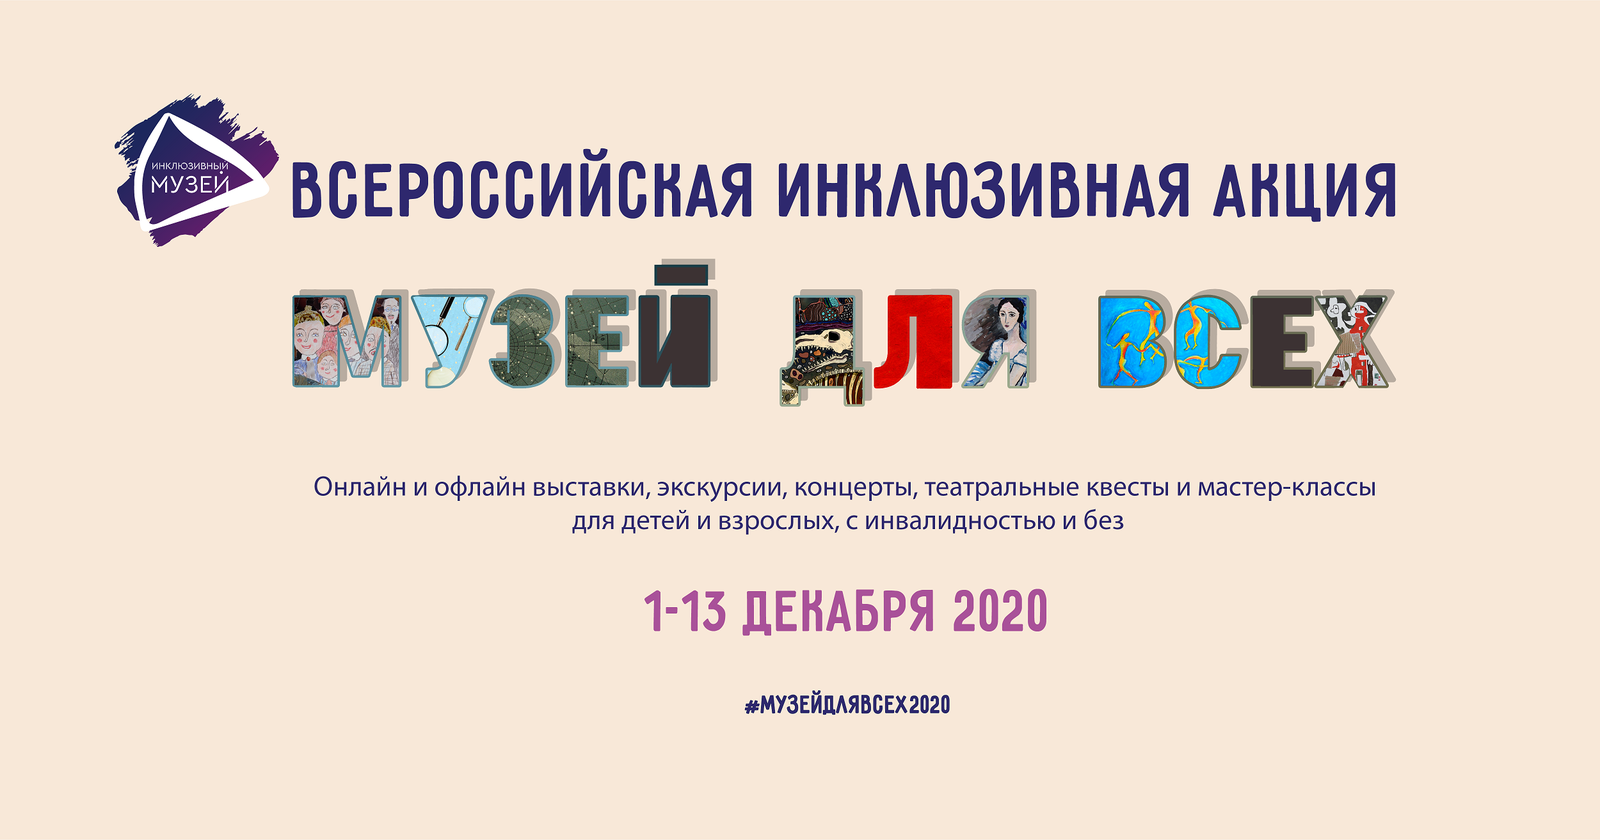 Культурные планы чем заняться в Москве и Петербурге с 4 по 7 декабря